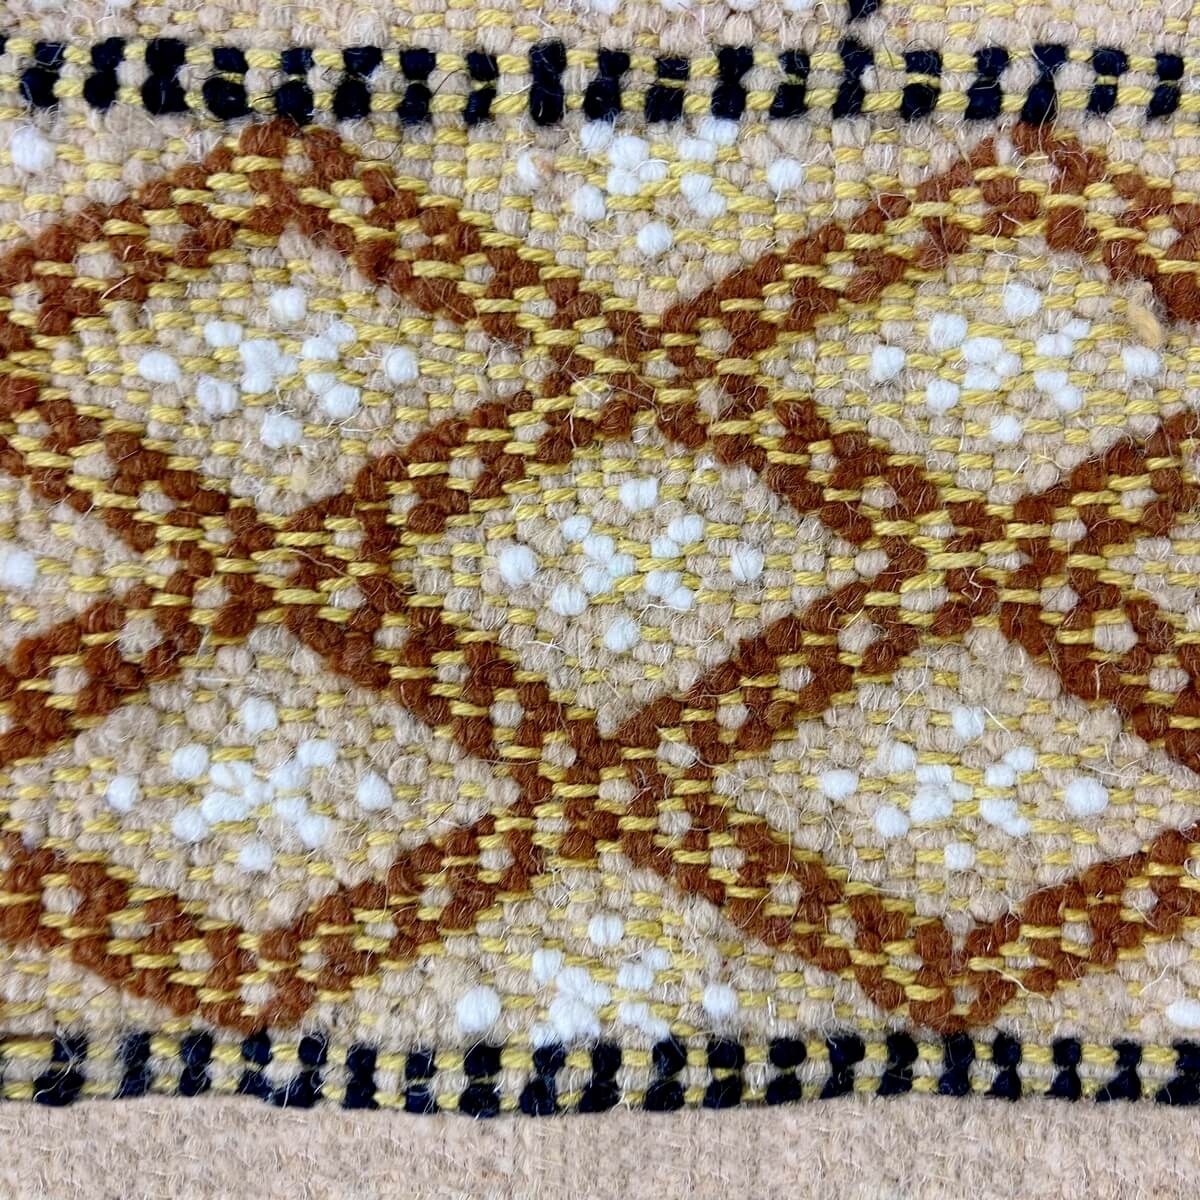 Berber tapijt Tapijt Margoum Baghrir 120x200 Beige (Handgeweven, Wol, Tunesië) Tunesisch Margoum Tapijt uit de stad Kairouan. Re